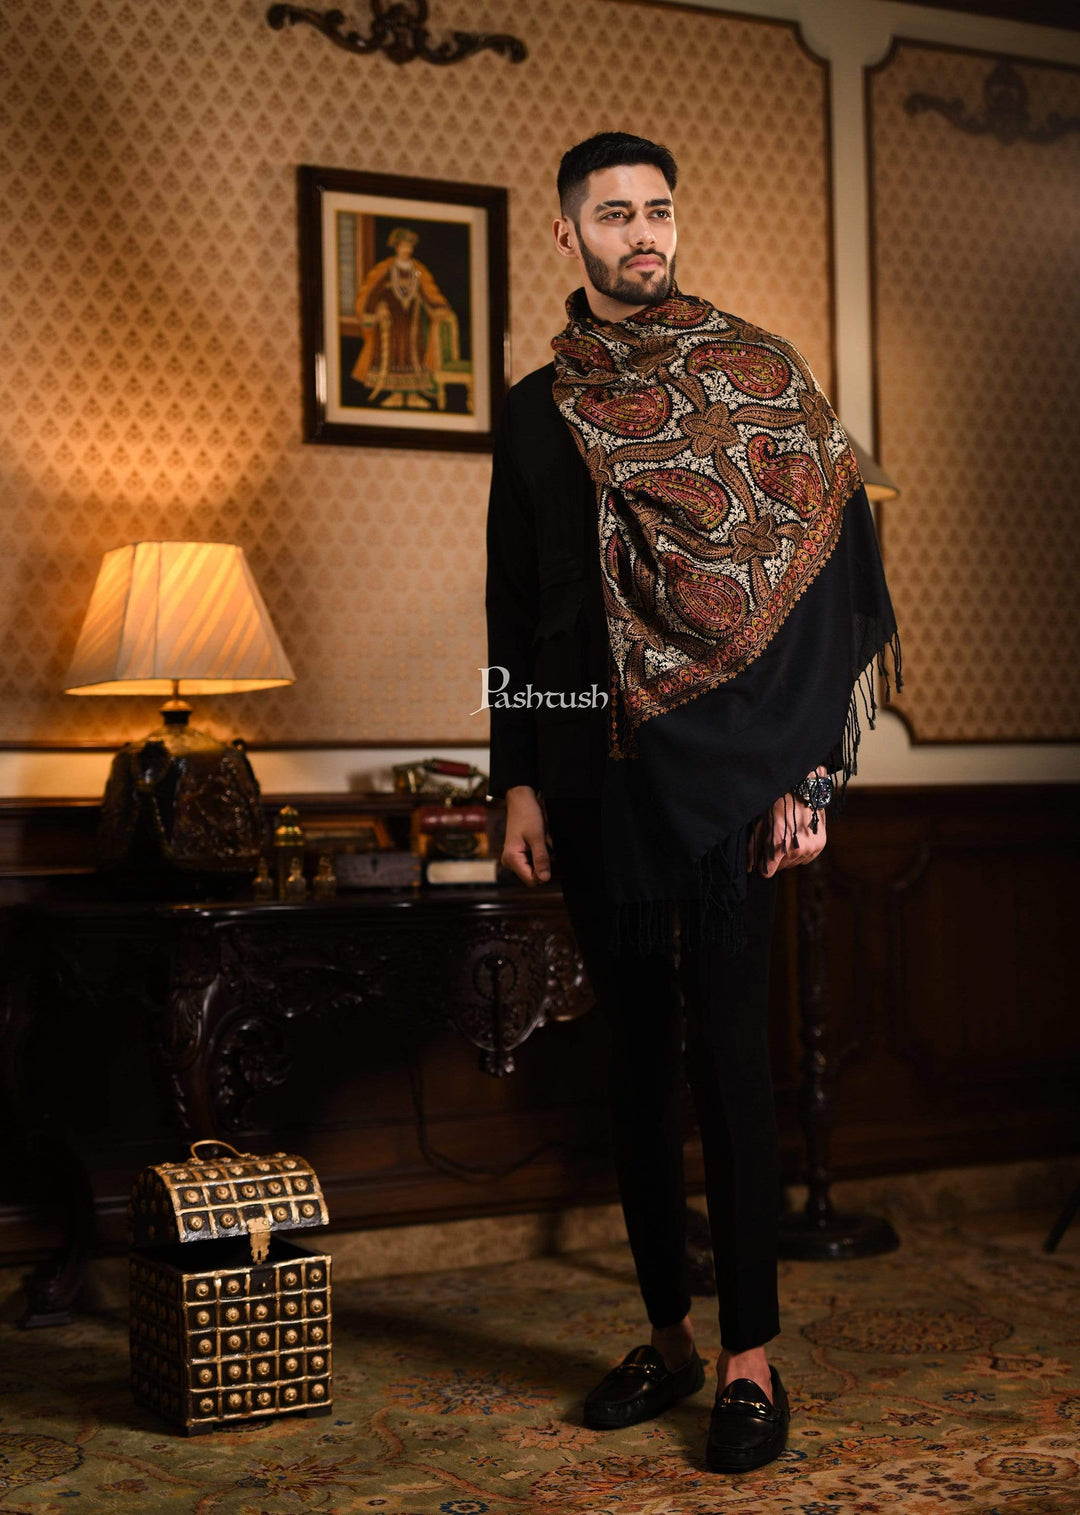 Pashtush India 70x200 Pashtush Mens Woollen Stole with Nalki Embroidery, Black